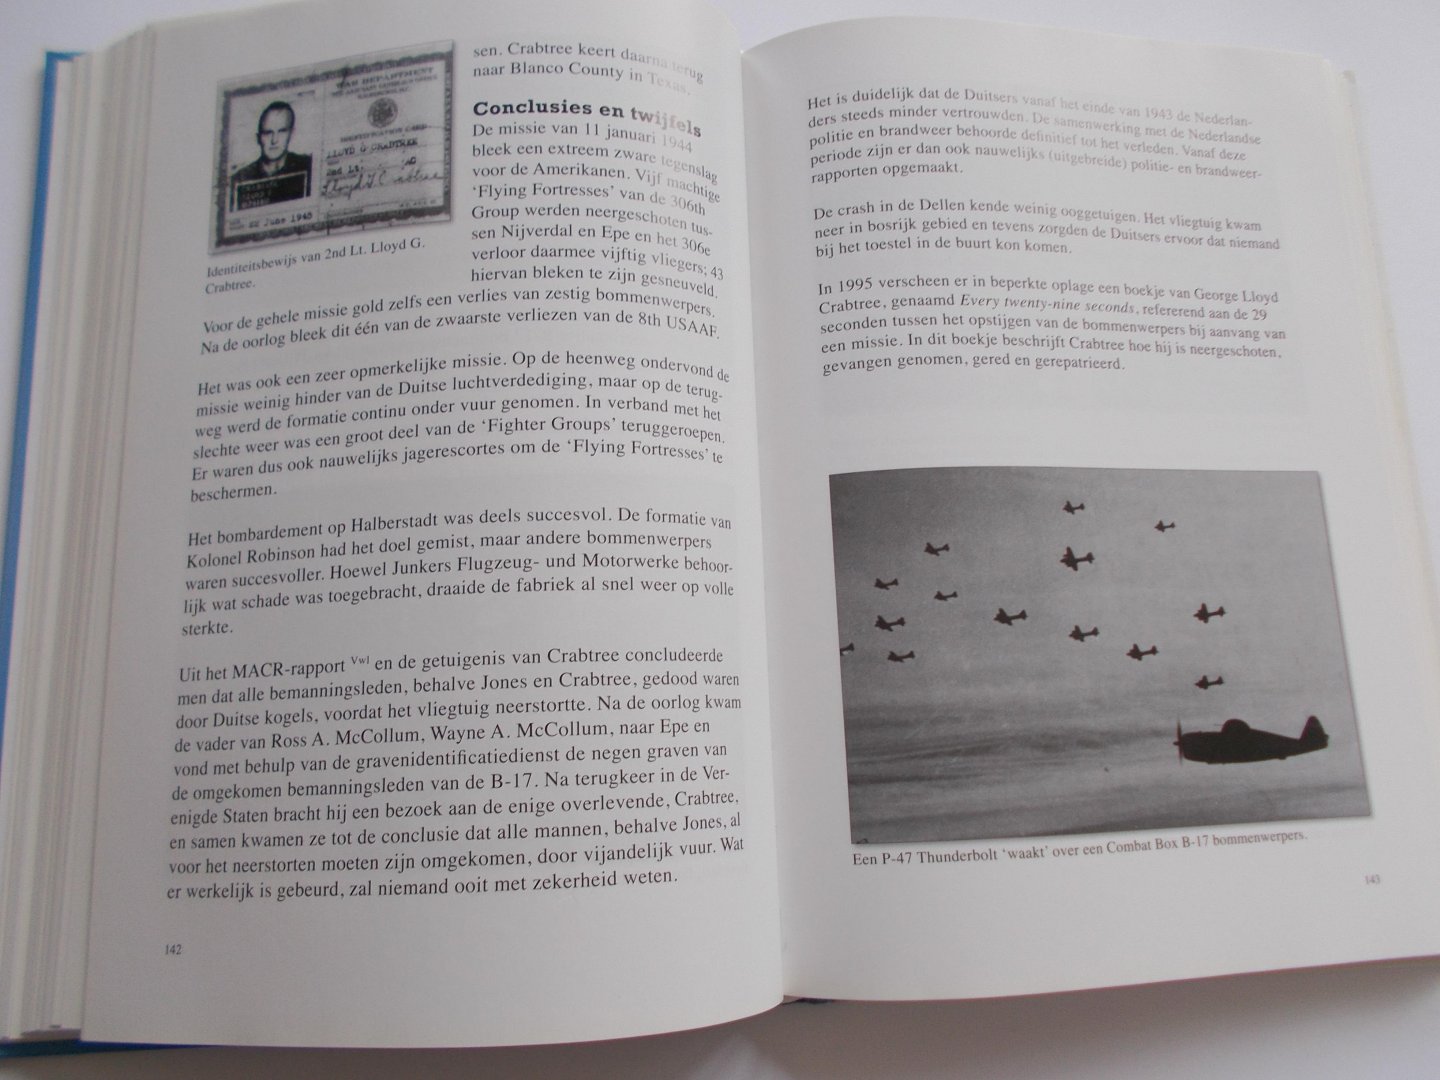 Kamphuis, Gerrit, Kamphuis, Silvie - Gevallen helden  - vliegtuigcrashes in de gemeente Epe 1940-1945 luchtoorlog